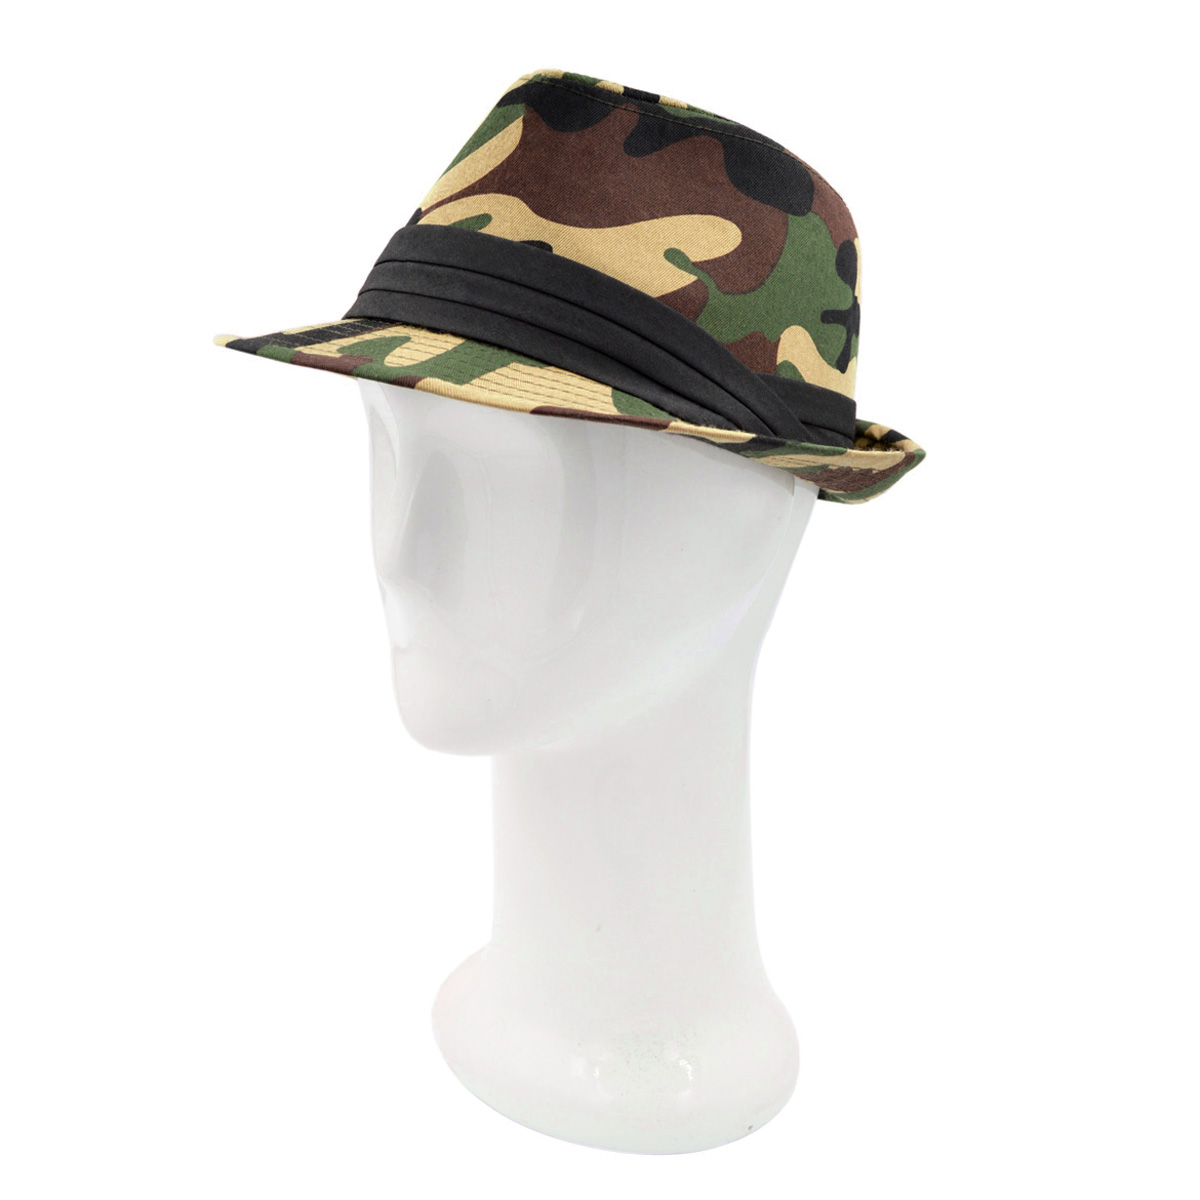 Premium Unisex Camouflage Black Band Fedora Hat - image 2 of 4